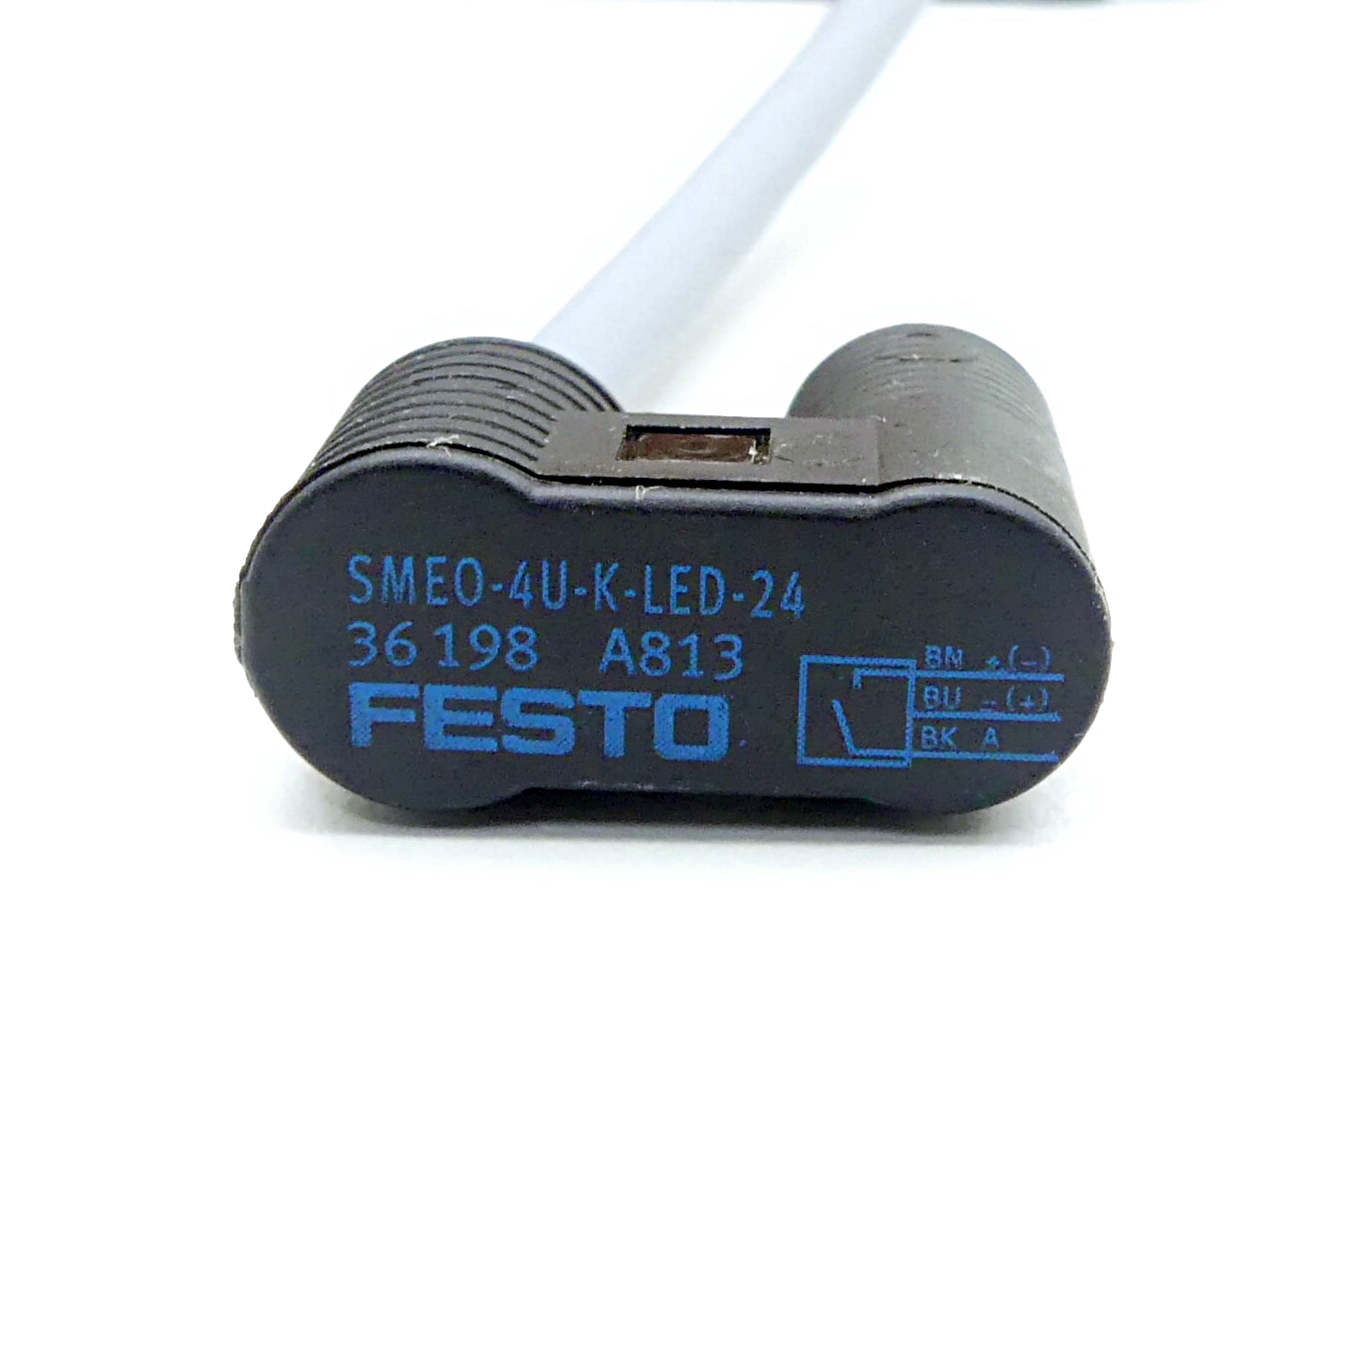 Proximity Switch SMEO-40-K-LED-24 